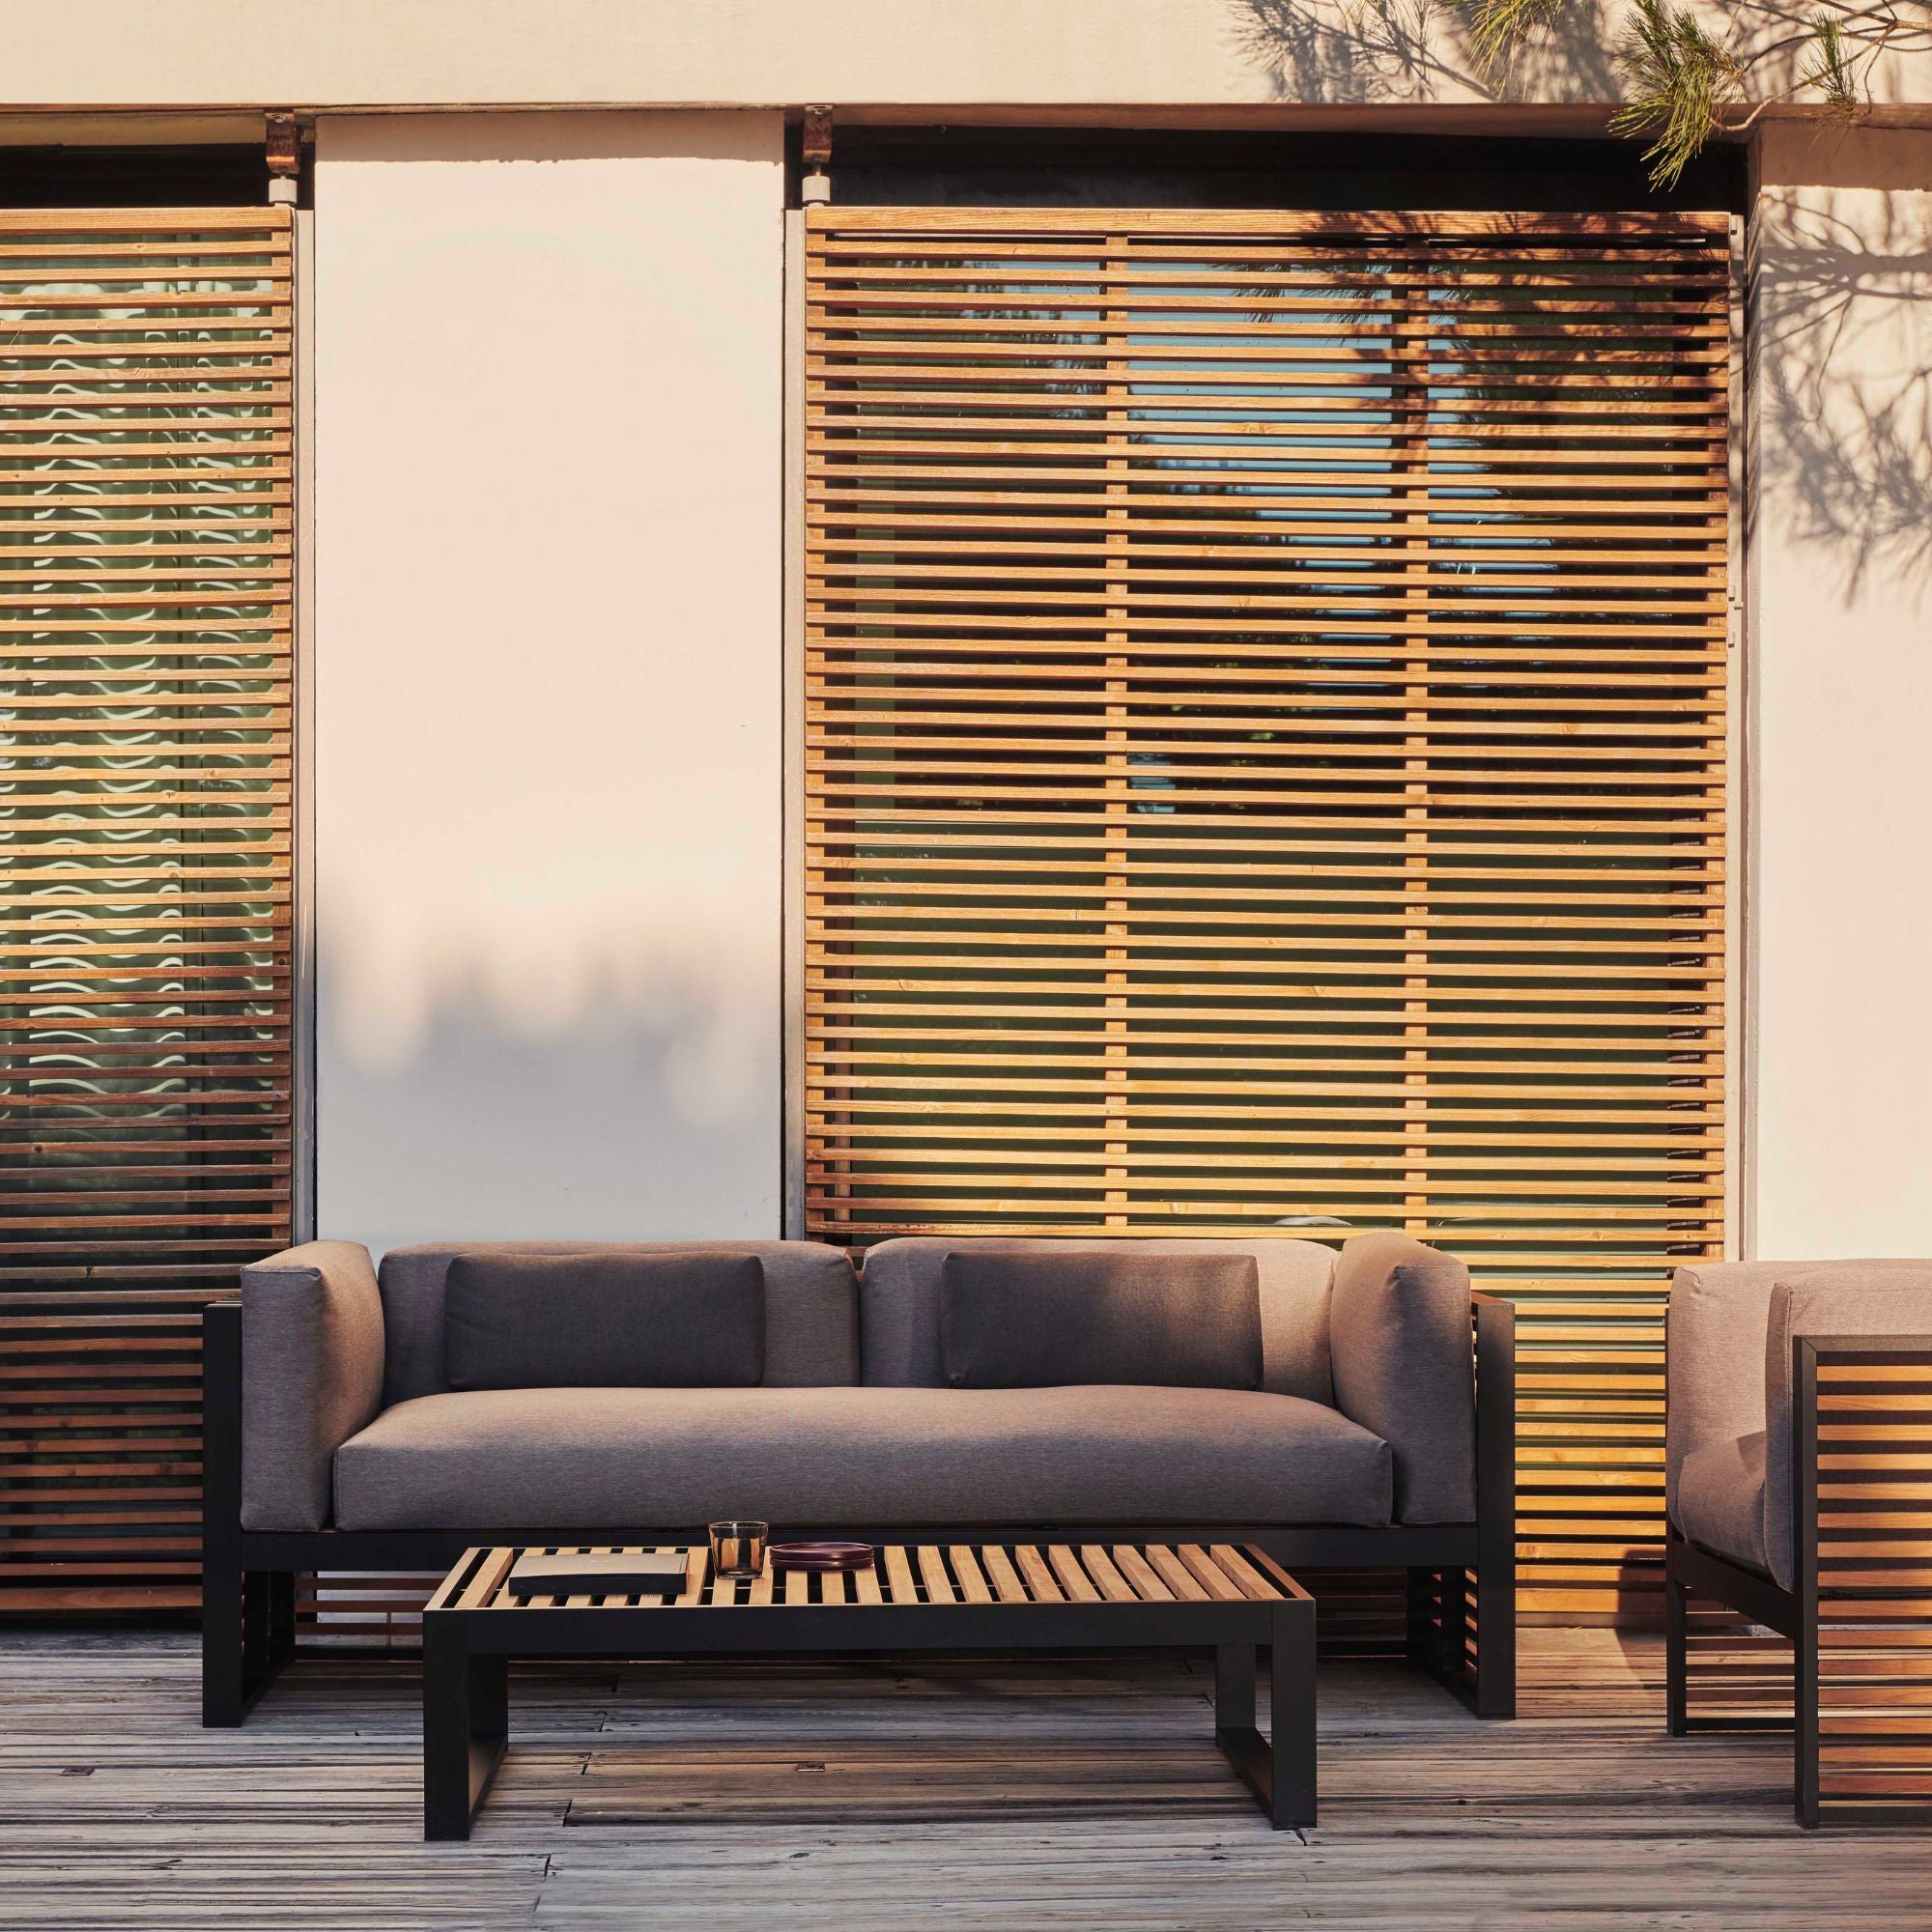 DNA Teak 2-Seat Sofa Outdoor Lounge Furniture Gandia Blasco